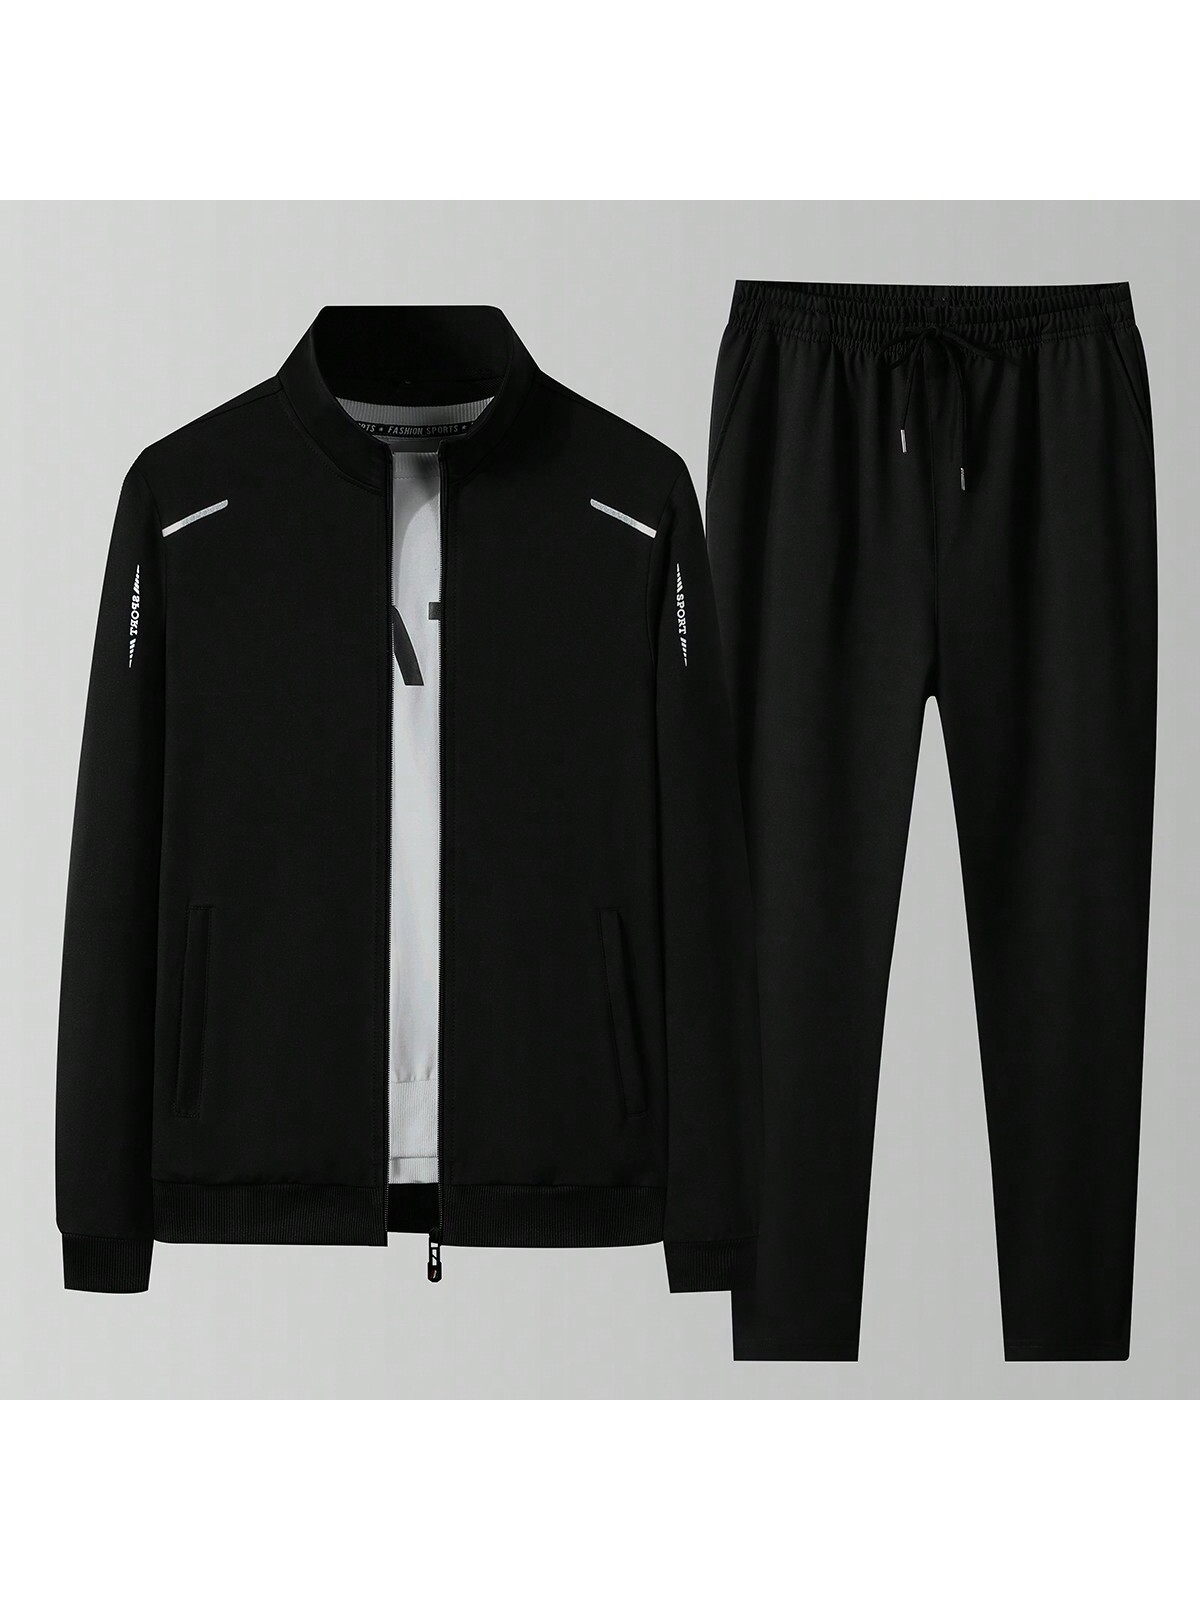 Мужская весенне-осенняя спортивная куртка и брюки контрастного цвета с застежкой-молнией спереди и воротником-стойкой, черный